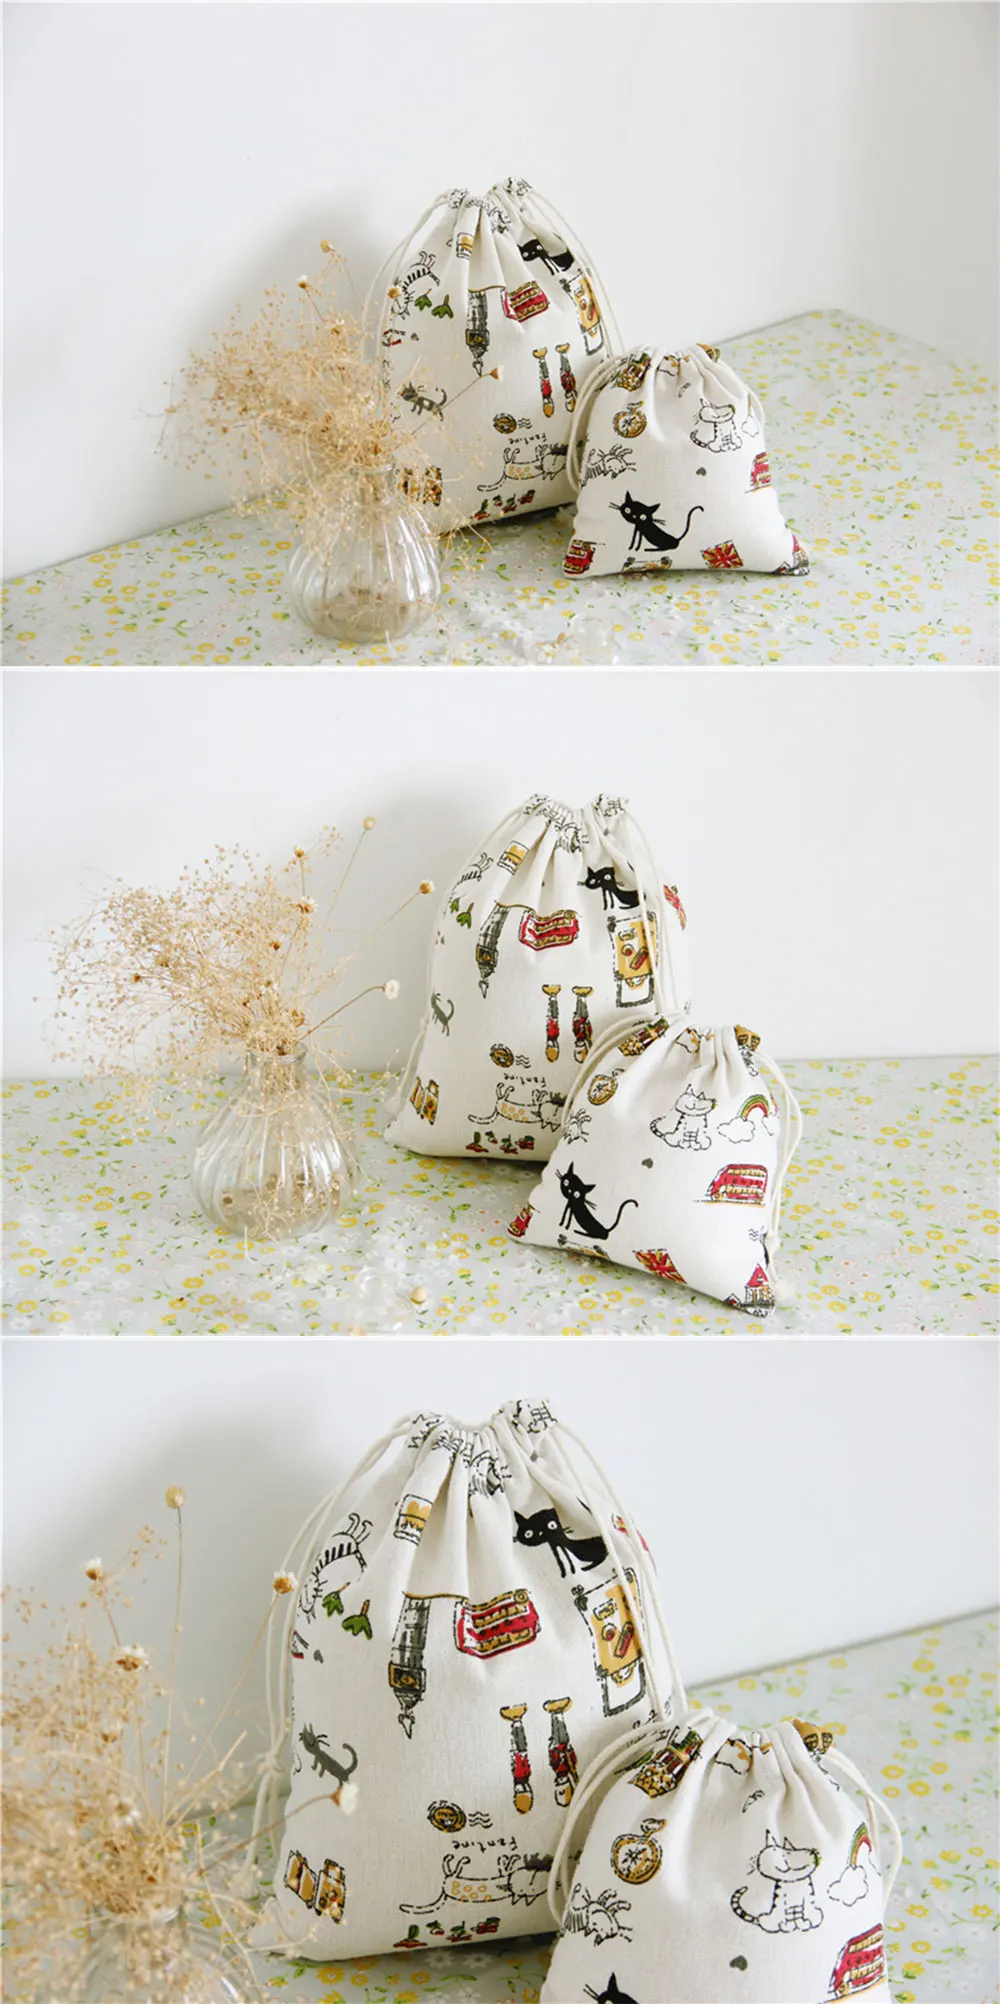 1 шт. озорной кот хлопок льняной тканевый мешок для сбора пыли одежда дорожная сумка для хранения портативный органайзер для дома Sundry детские игрушки сумки для хранения